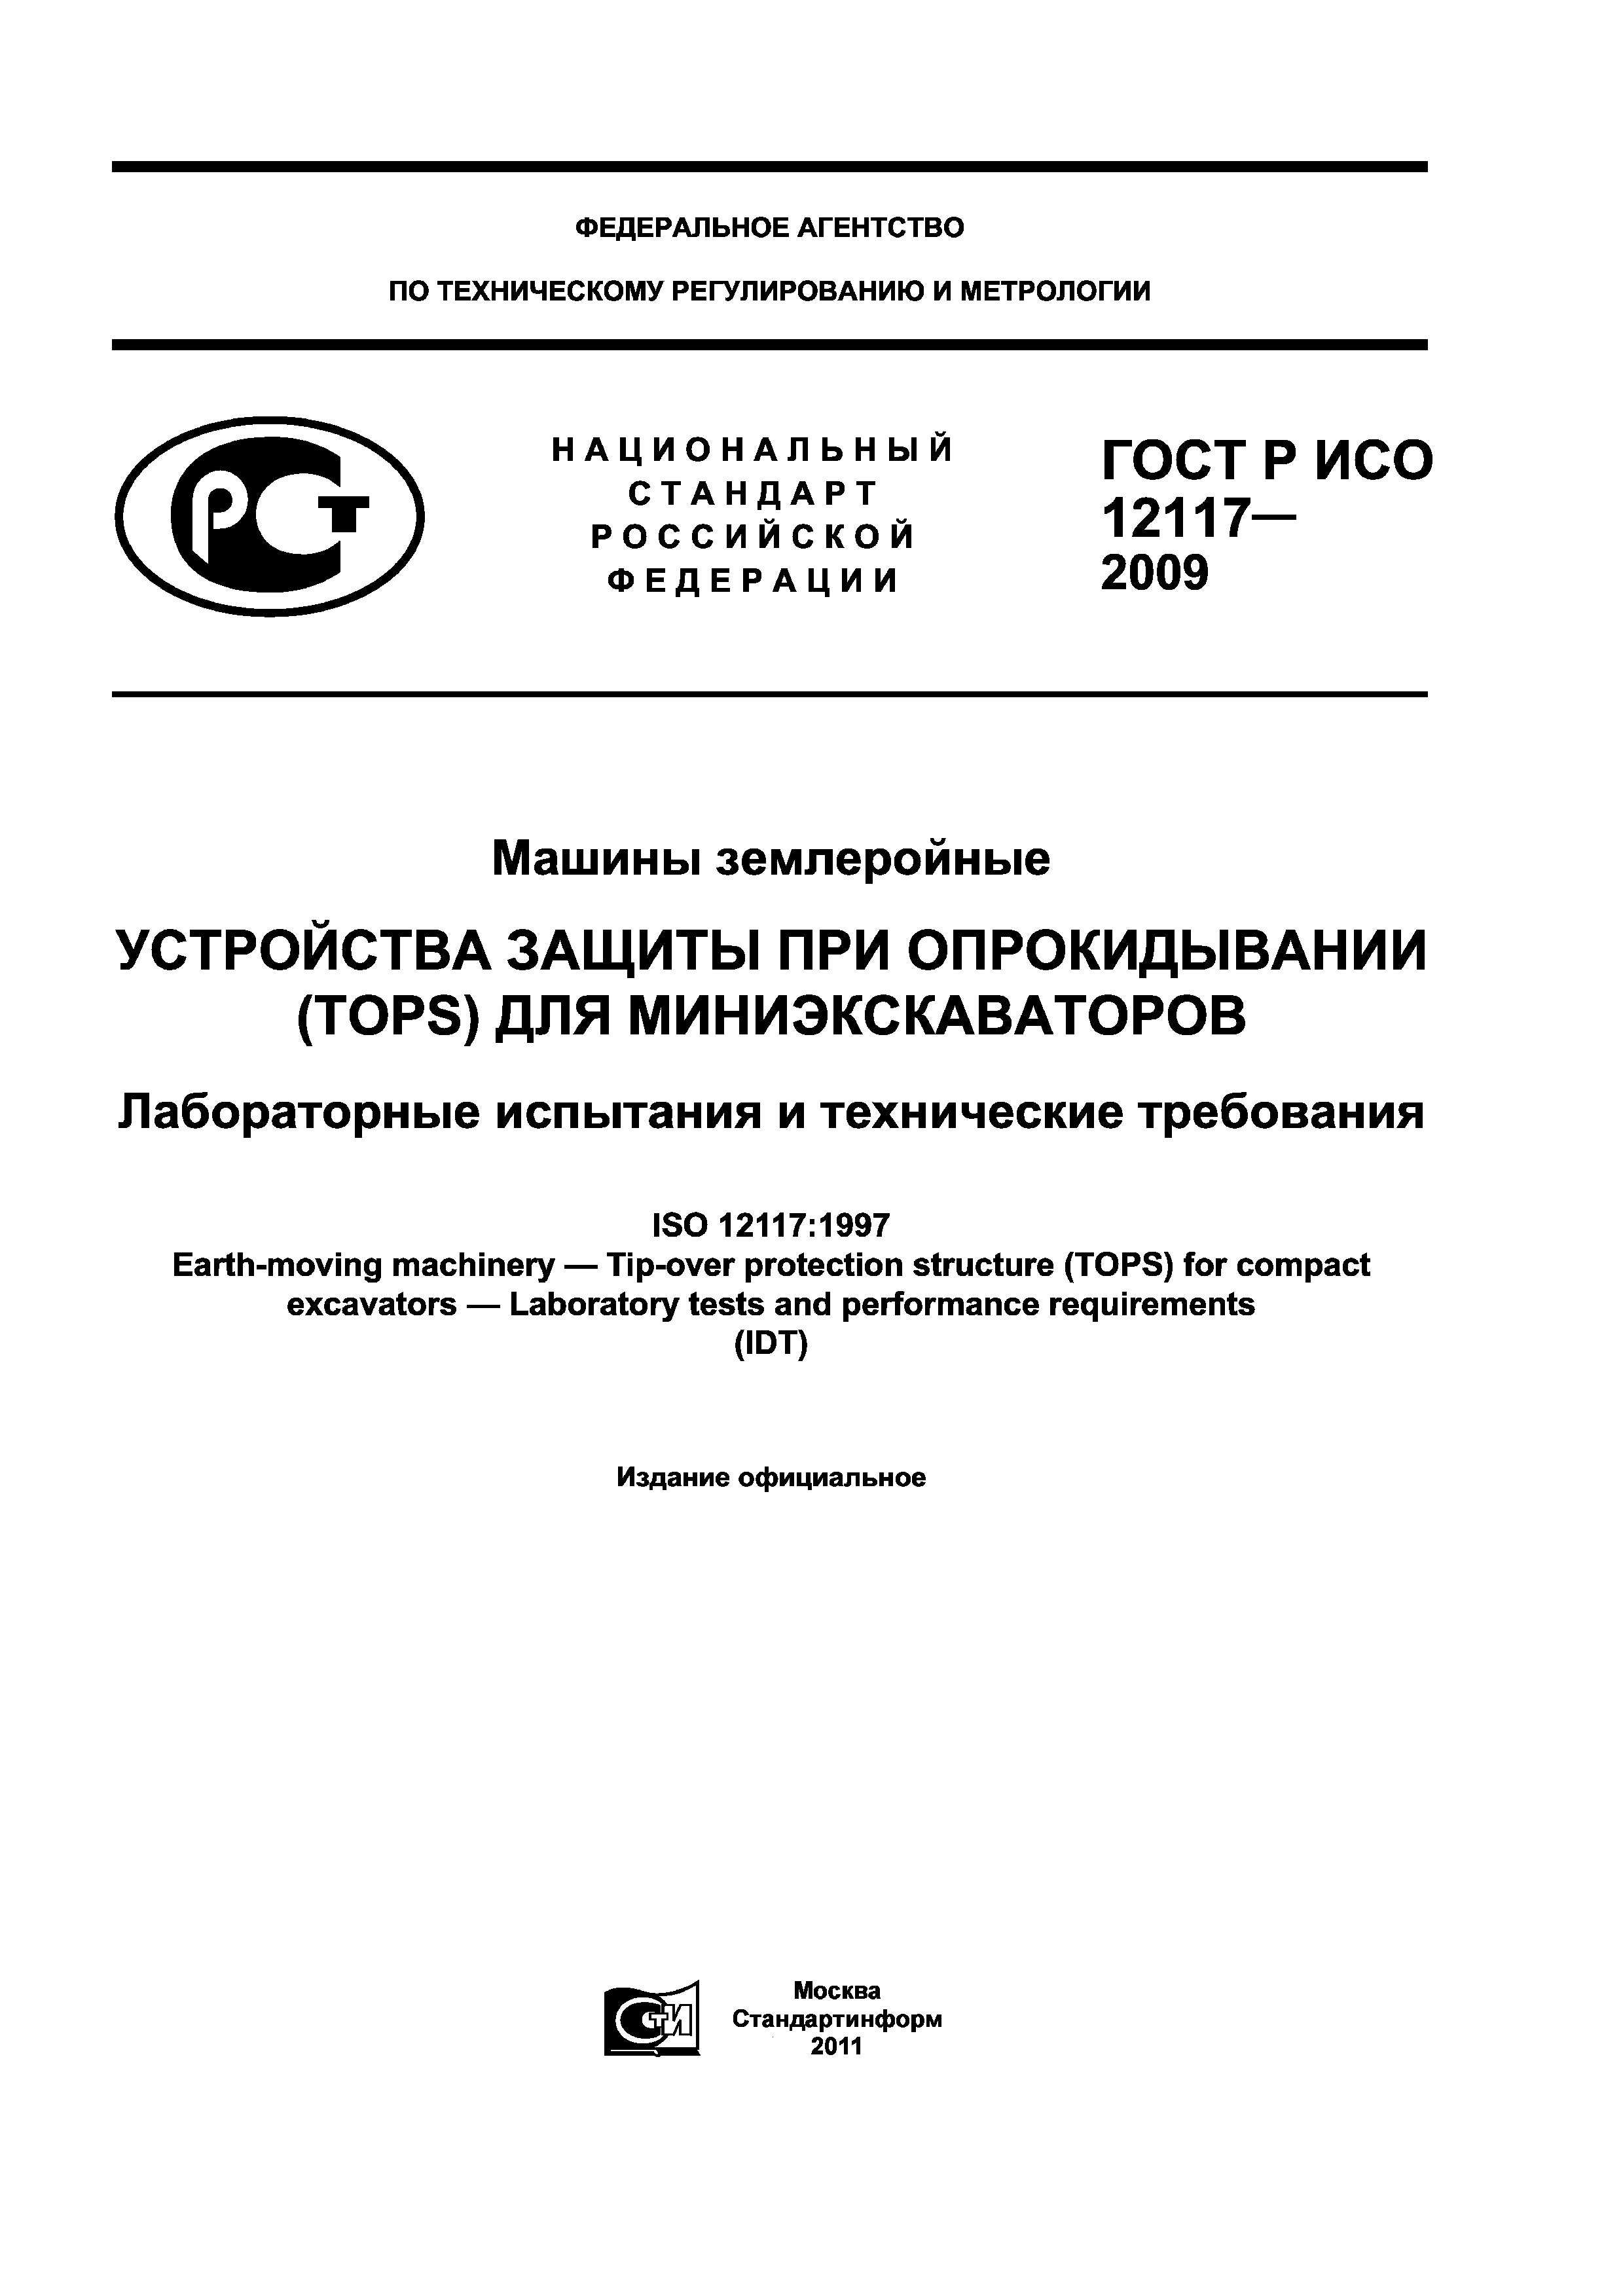 ГОСТ Р ИСО 12117-2009